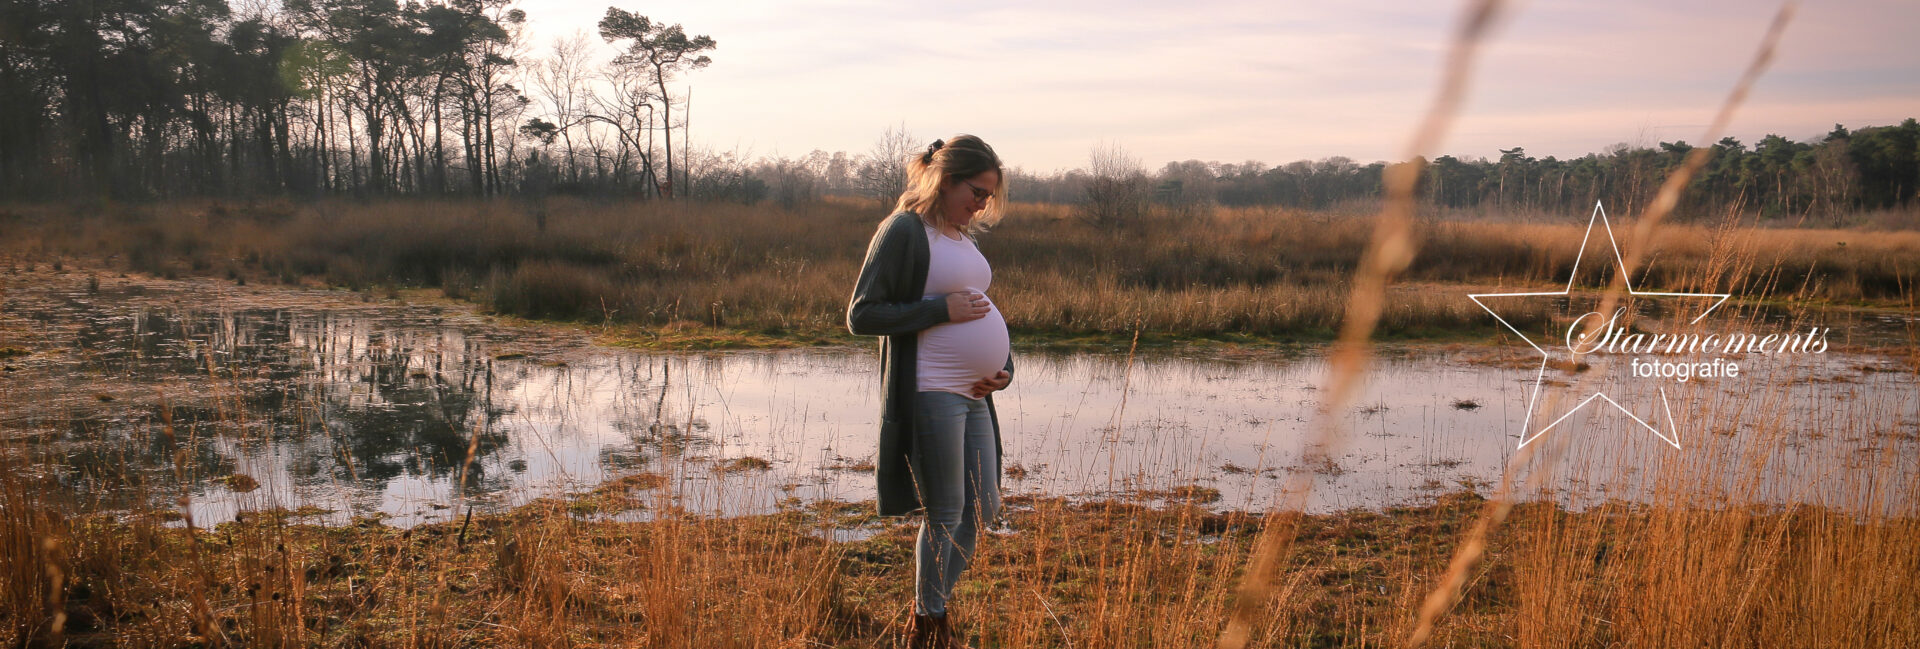 Zwangerschap fotoshoot en fotografie Tarieven